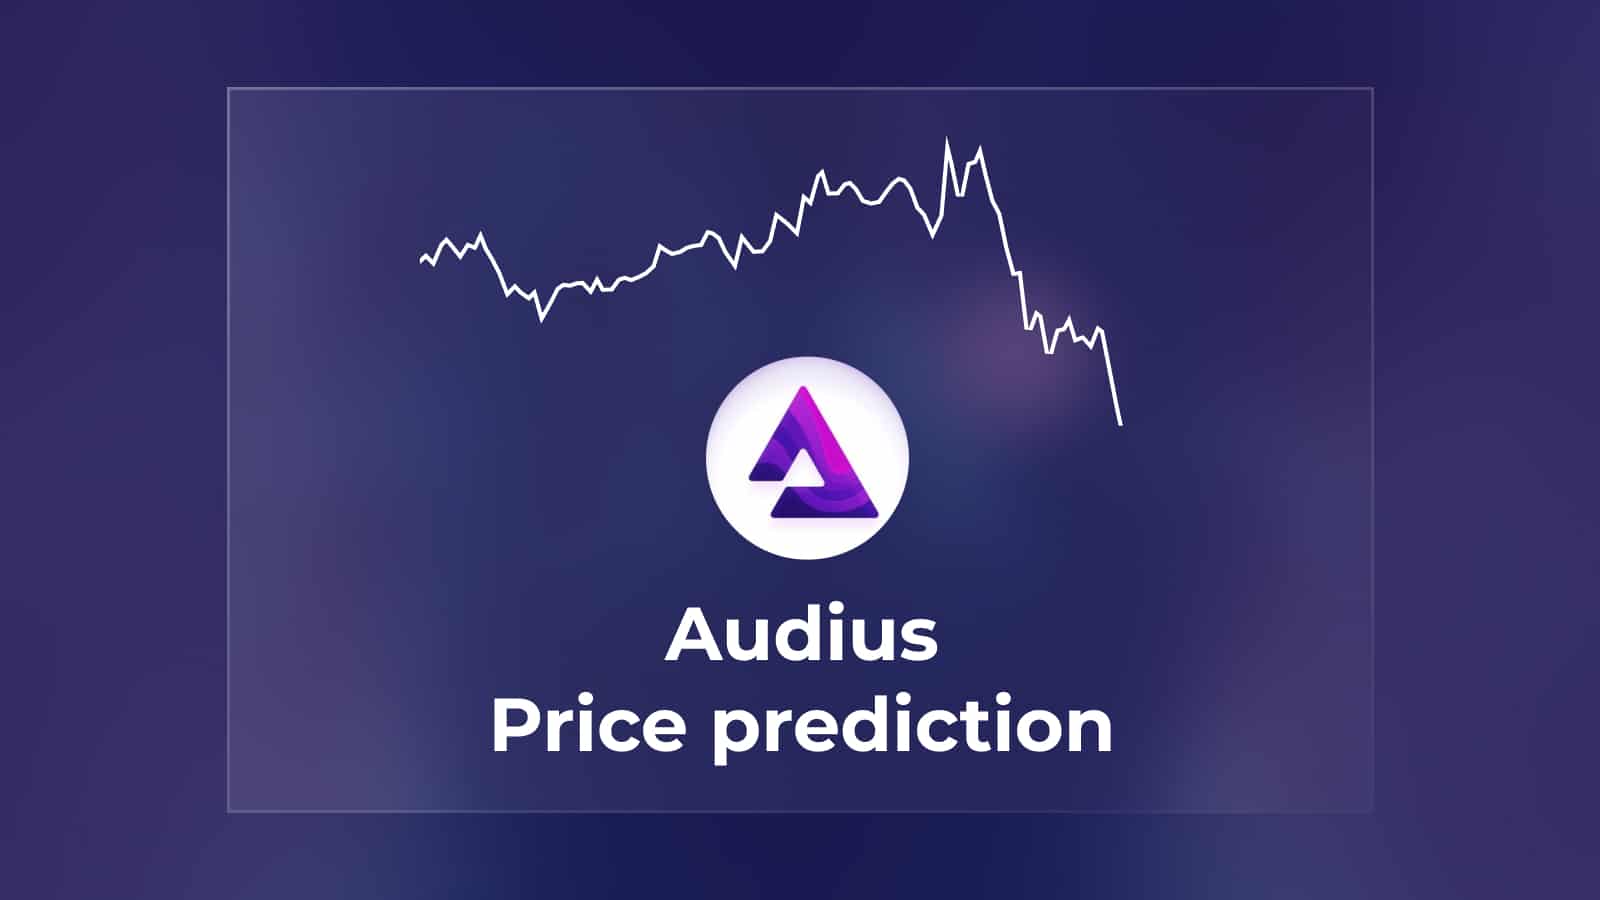 Audius Price Prediction Featured Image 2